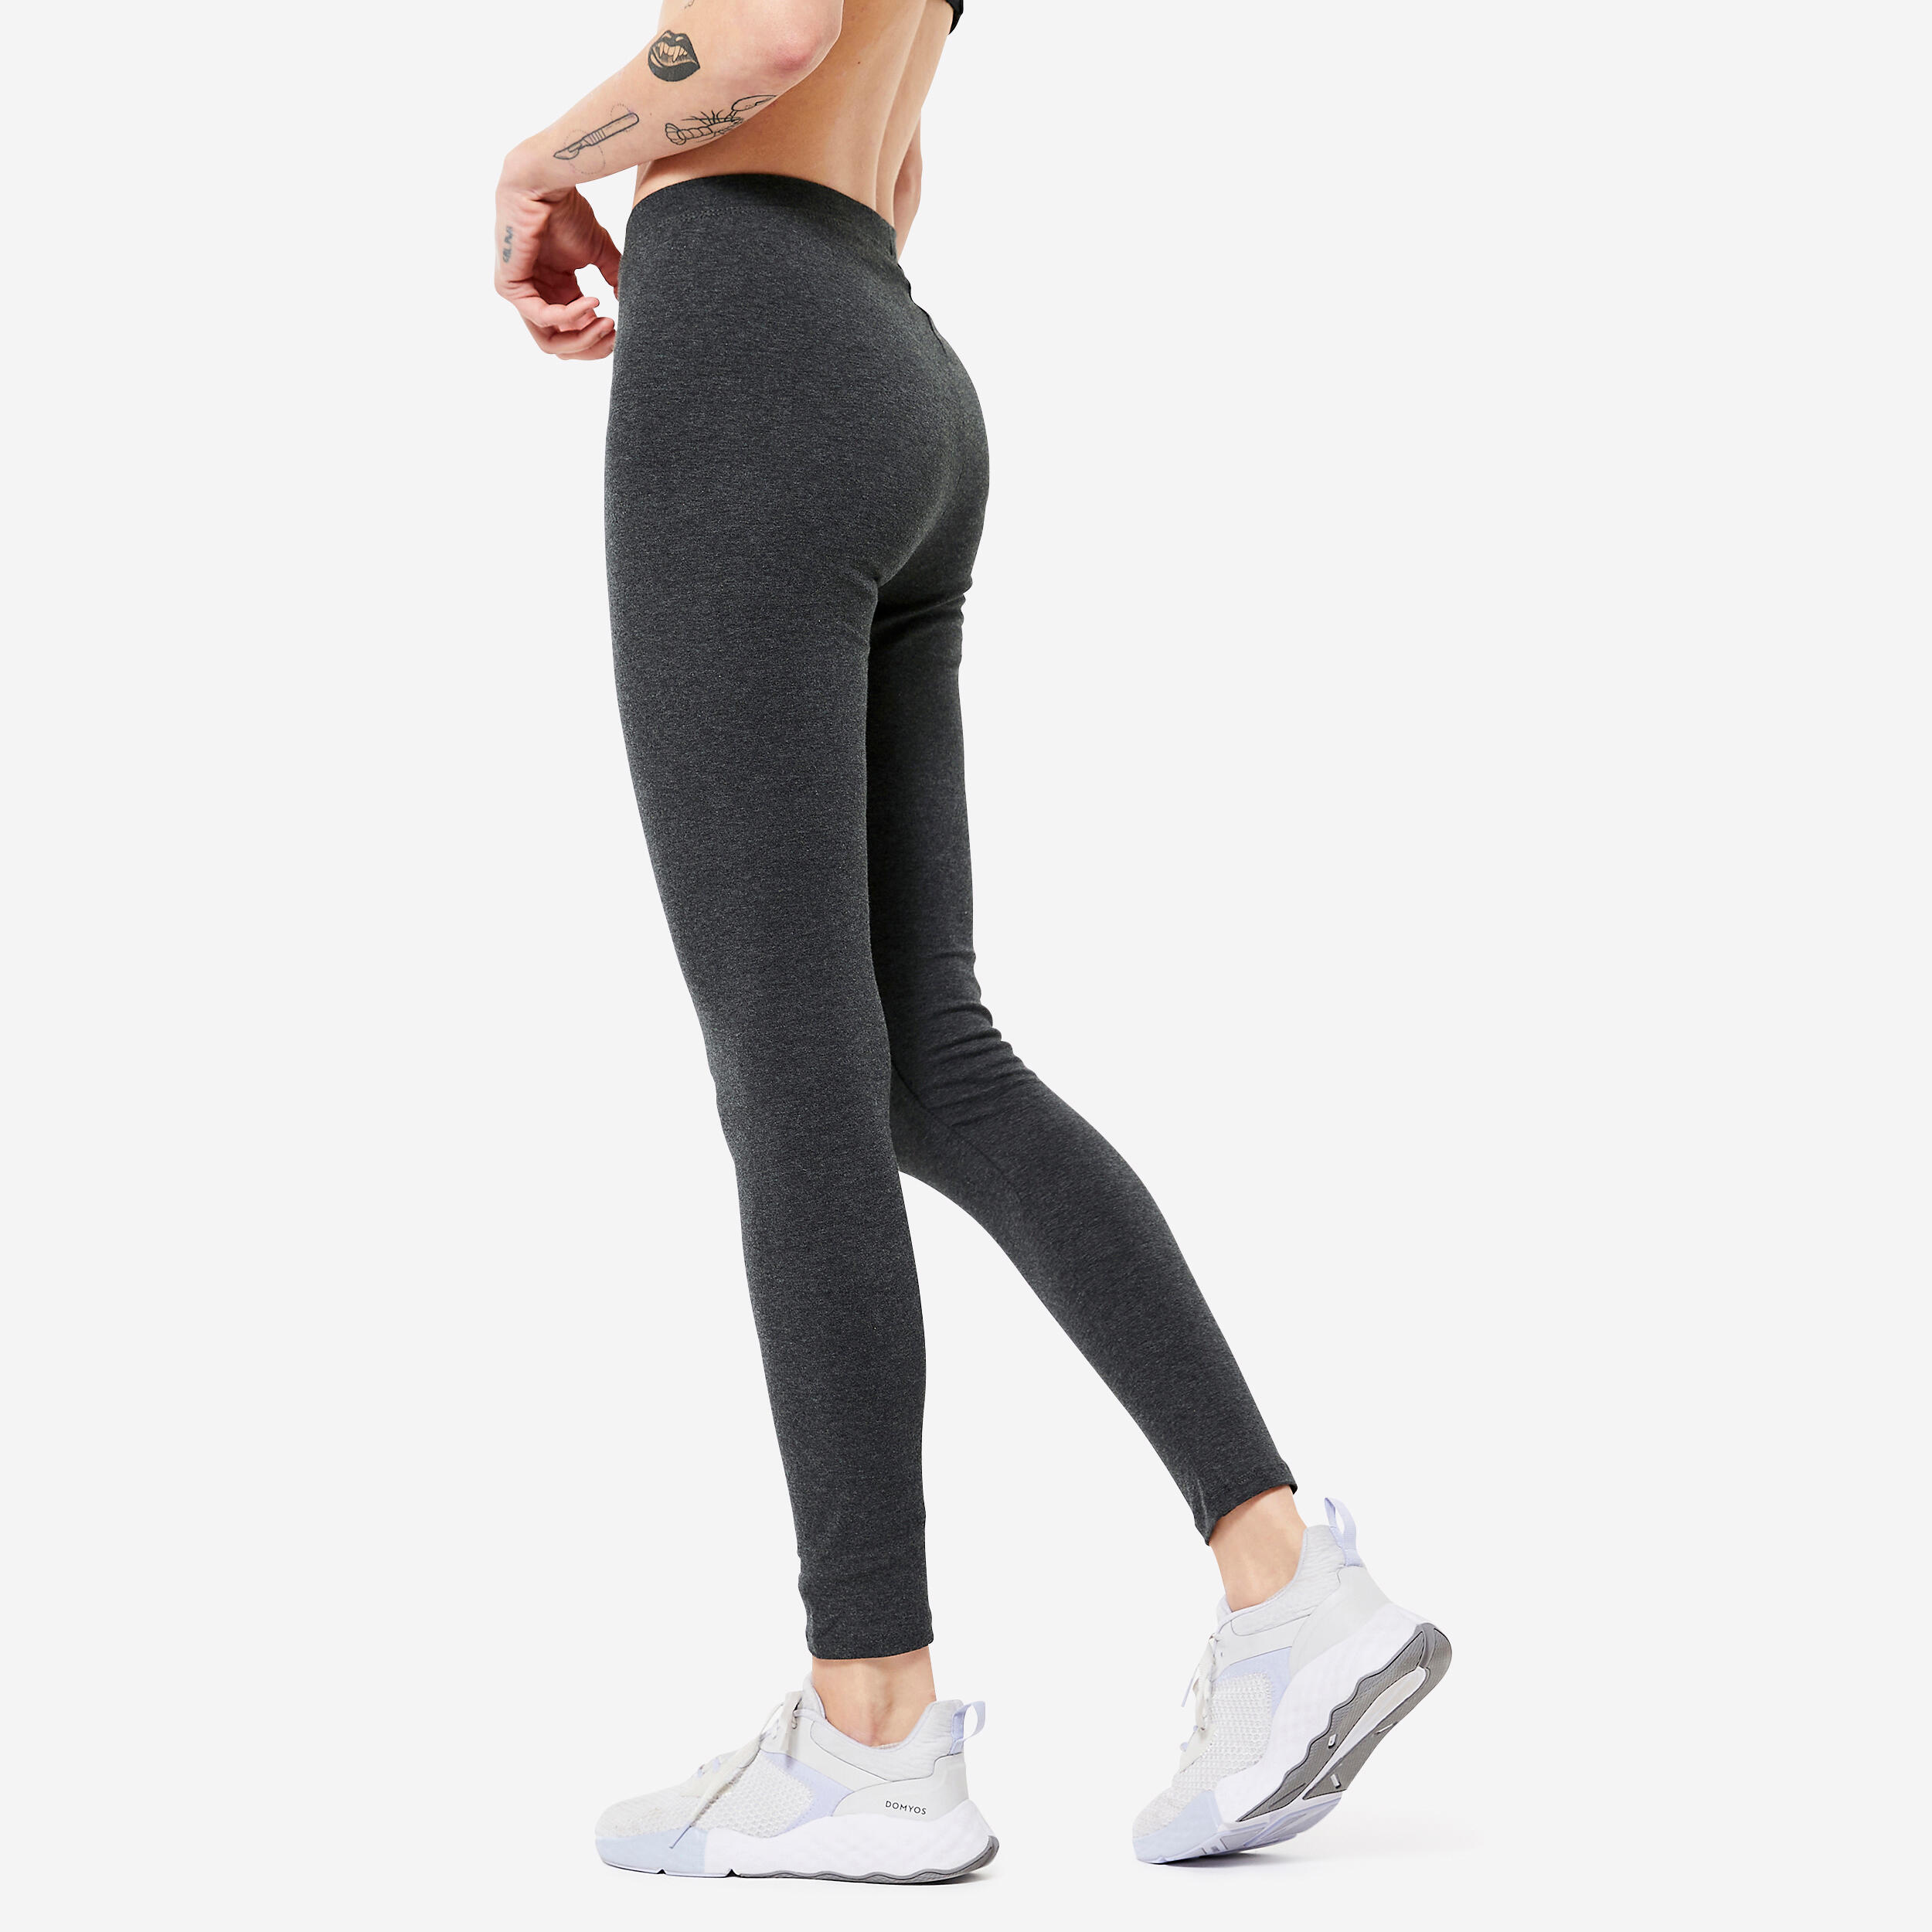 Women's Slim-Fit Fitness Leggings 100 - Mottled Dark Grey 4/4